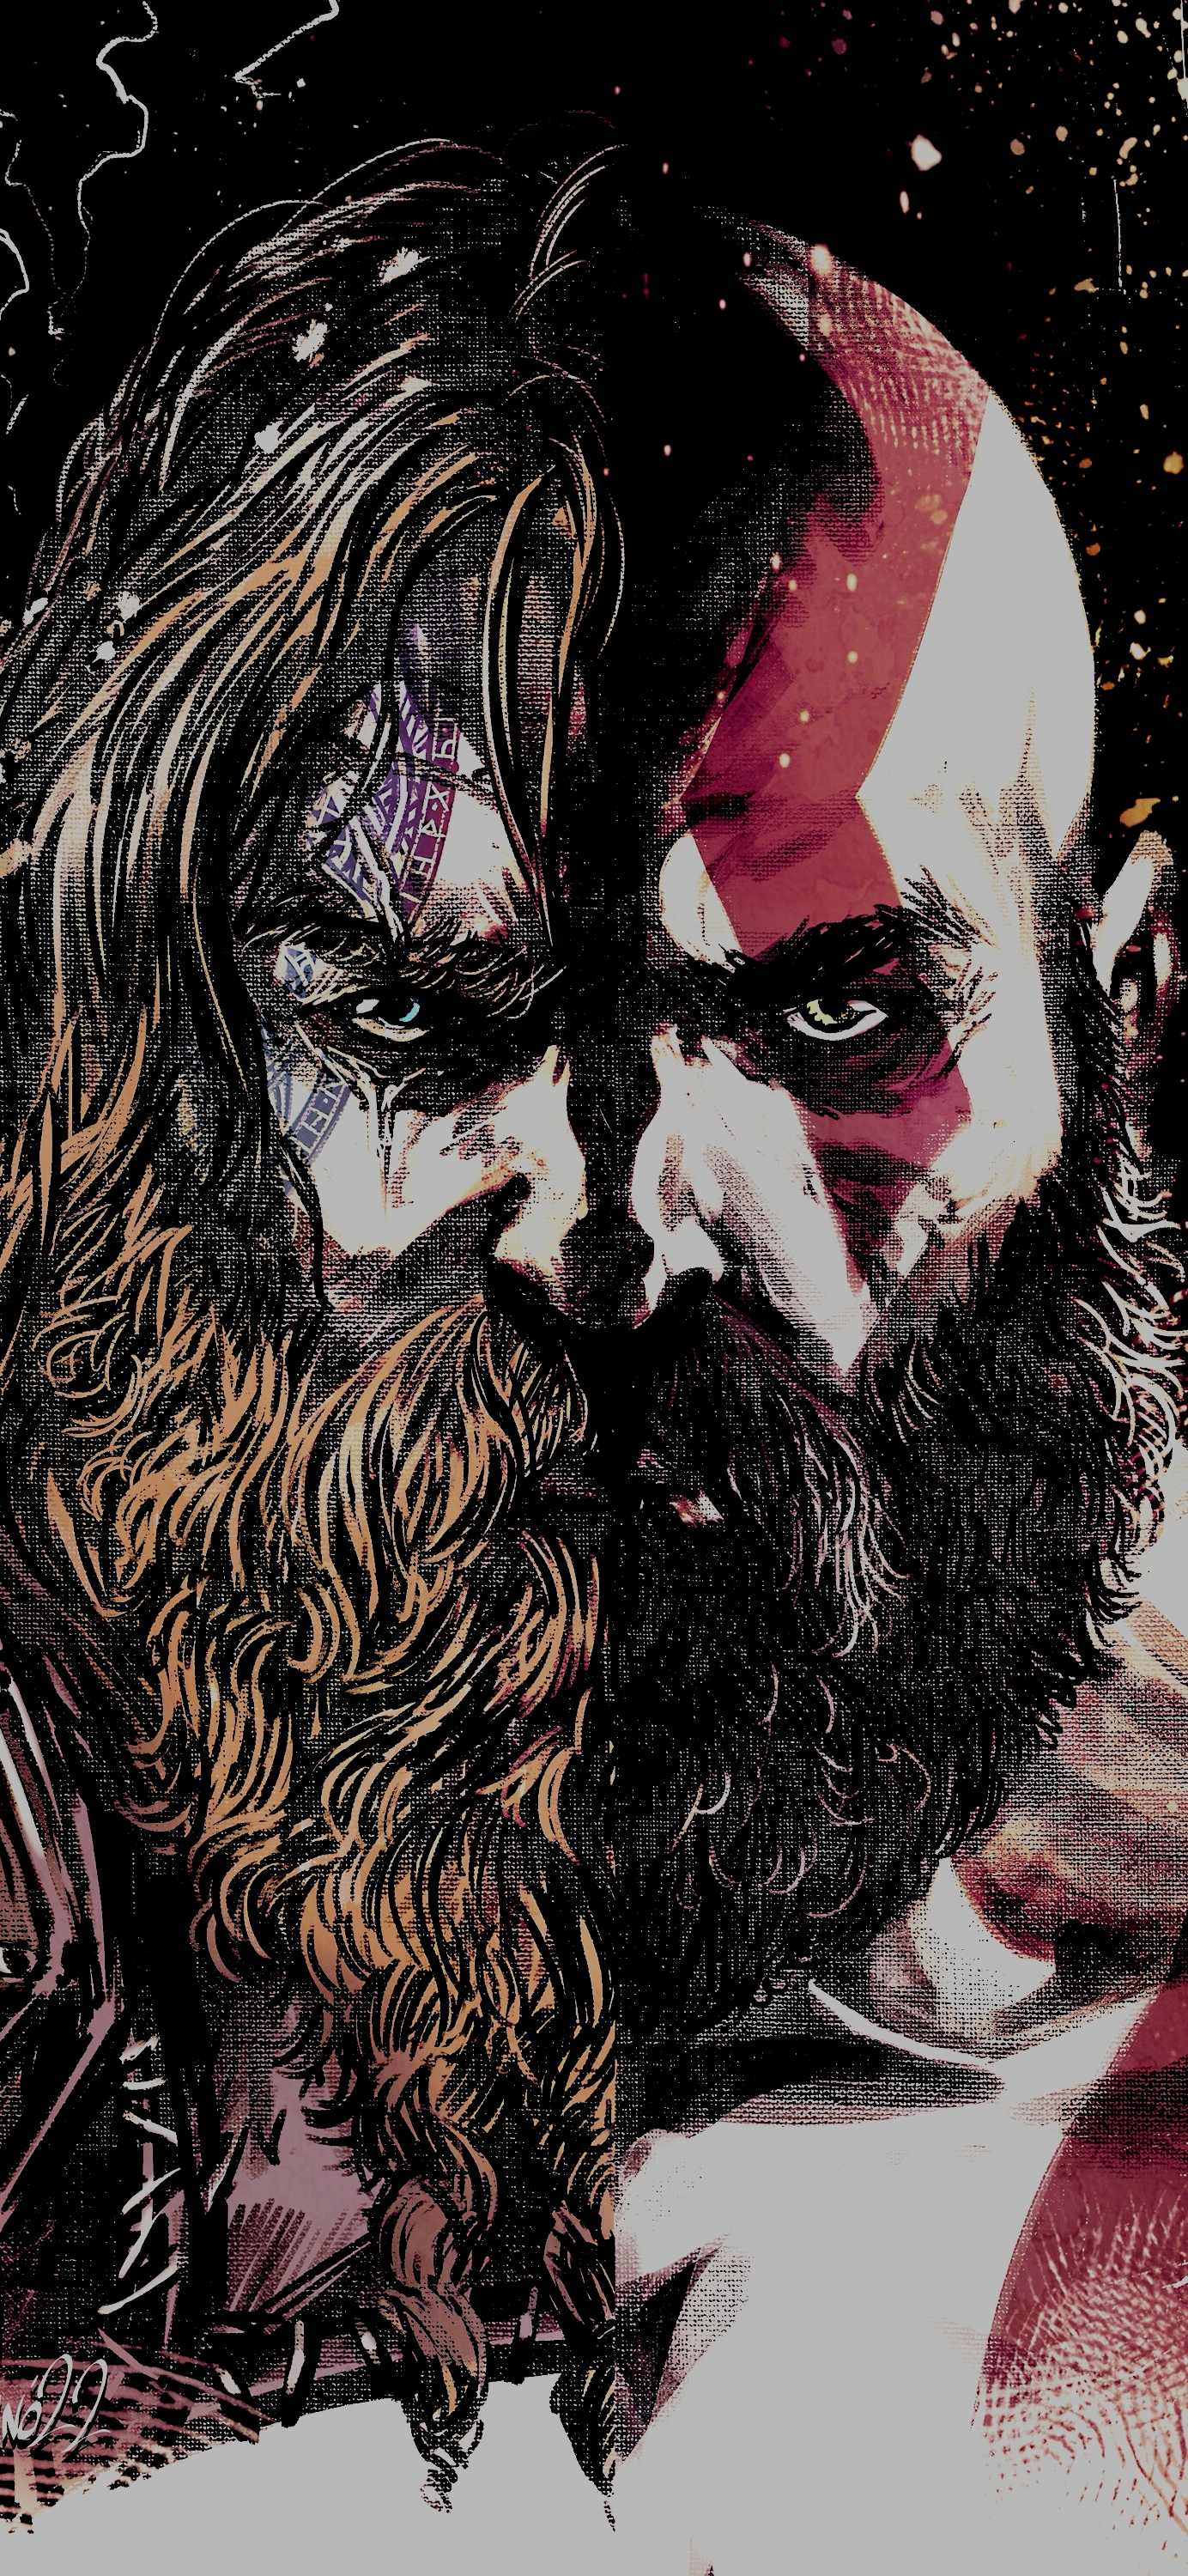 God of War Ragnarok Wallpapers  Top 25 Best God of War Ragnarok Backgrounds  Download